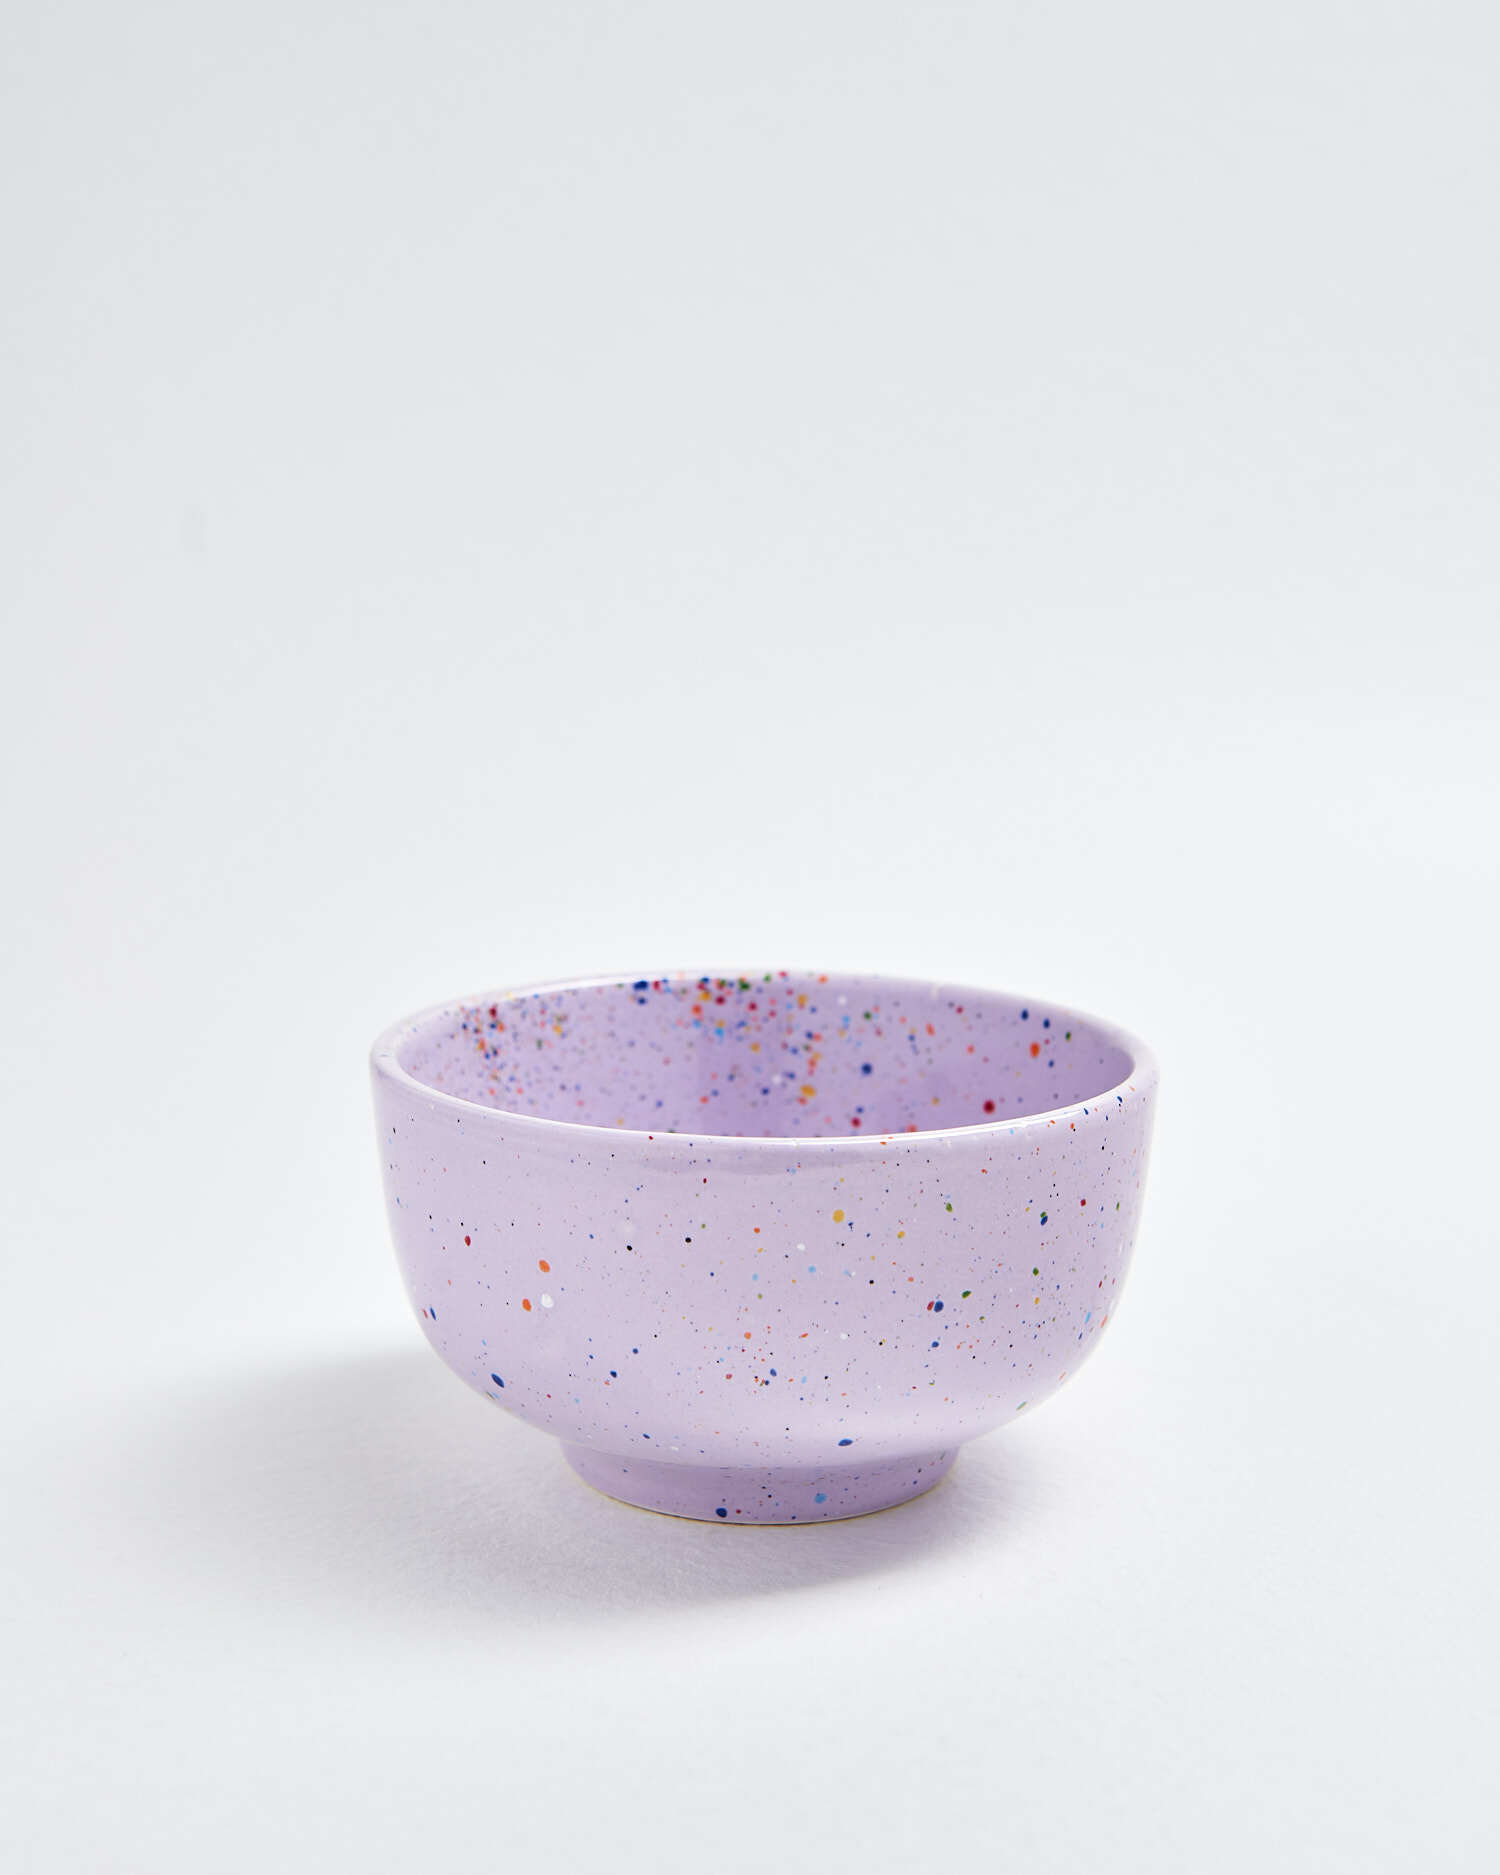 Party Mini Mini Schüssel Keramik Violett 0